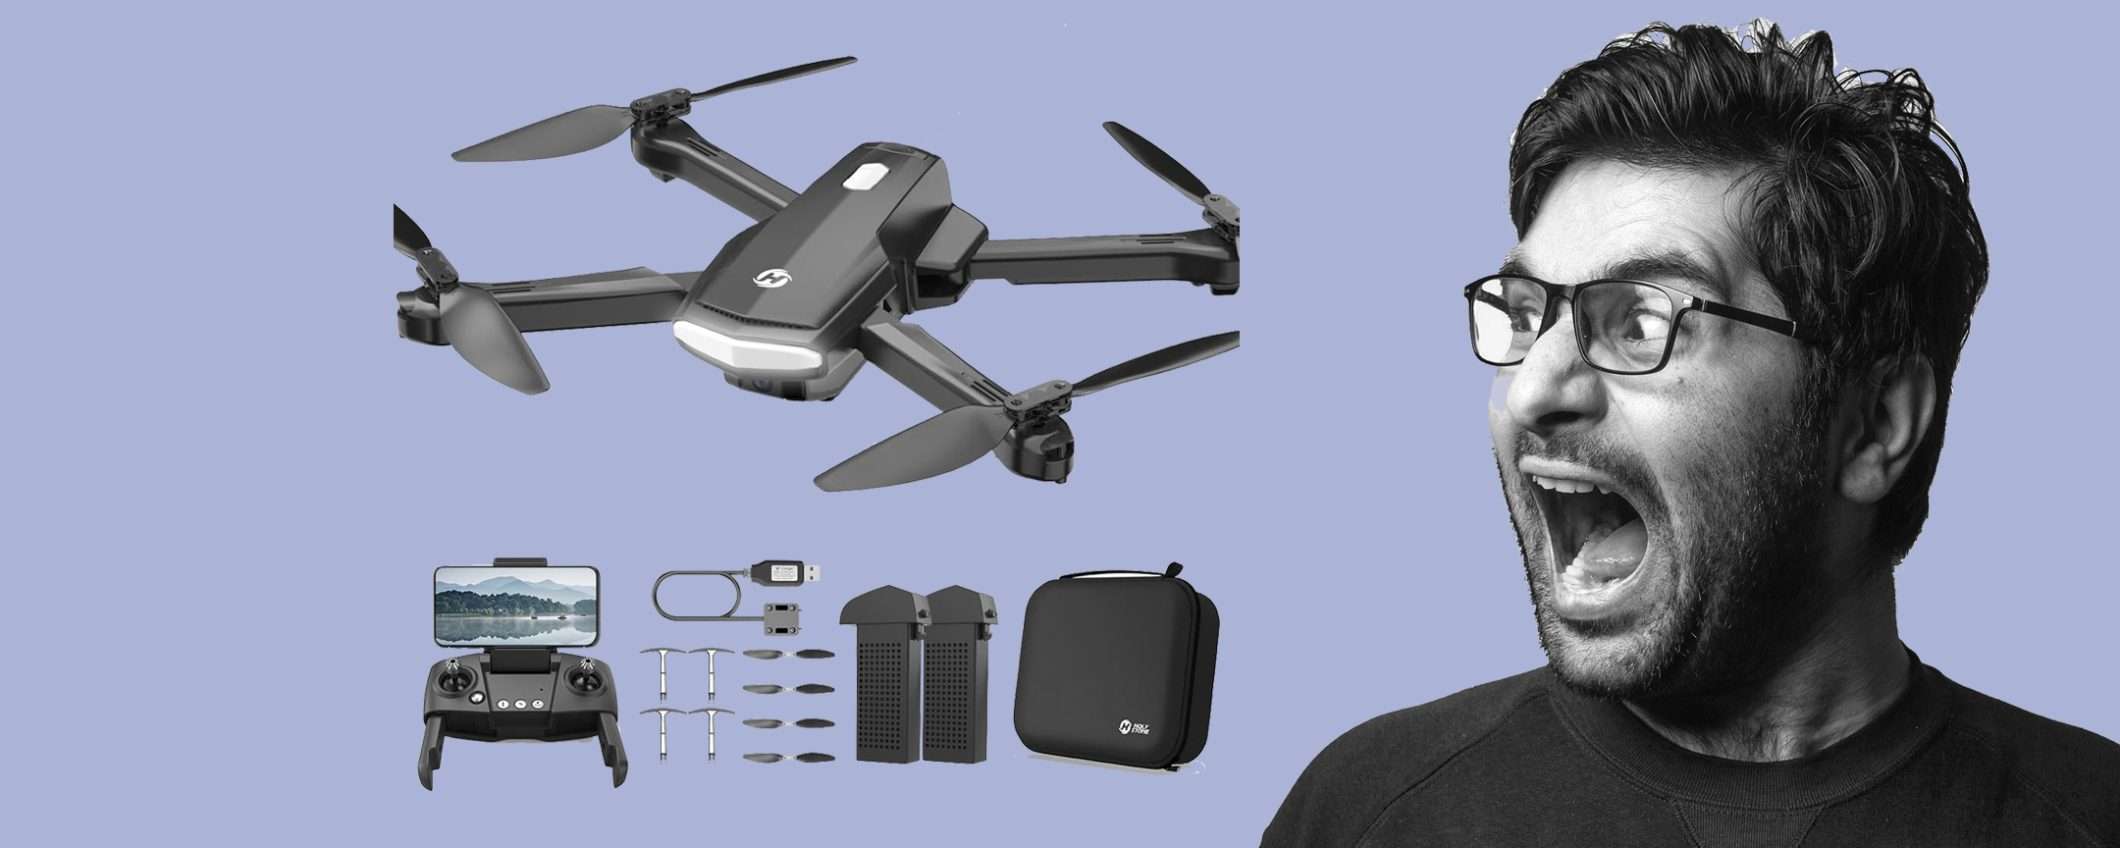 Drone pieghevole con Telecamera HD in sconto coupon del 50%